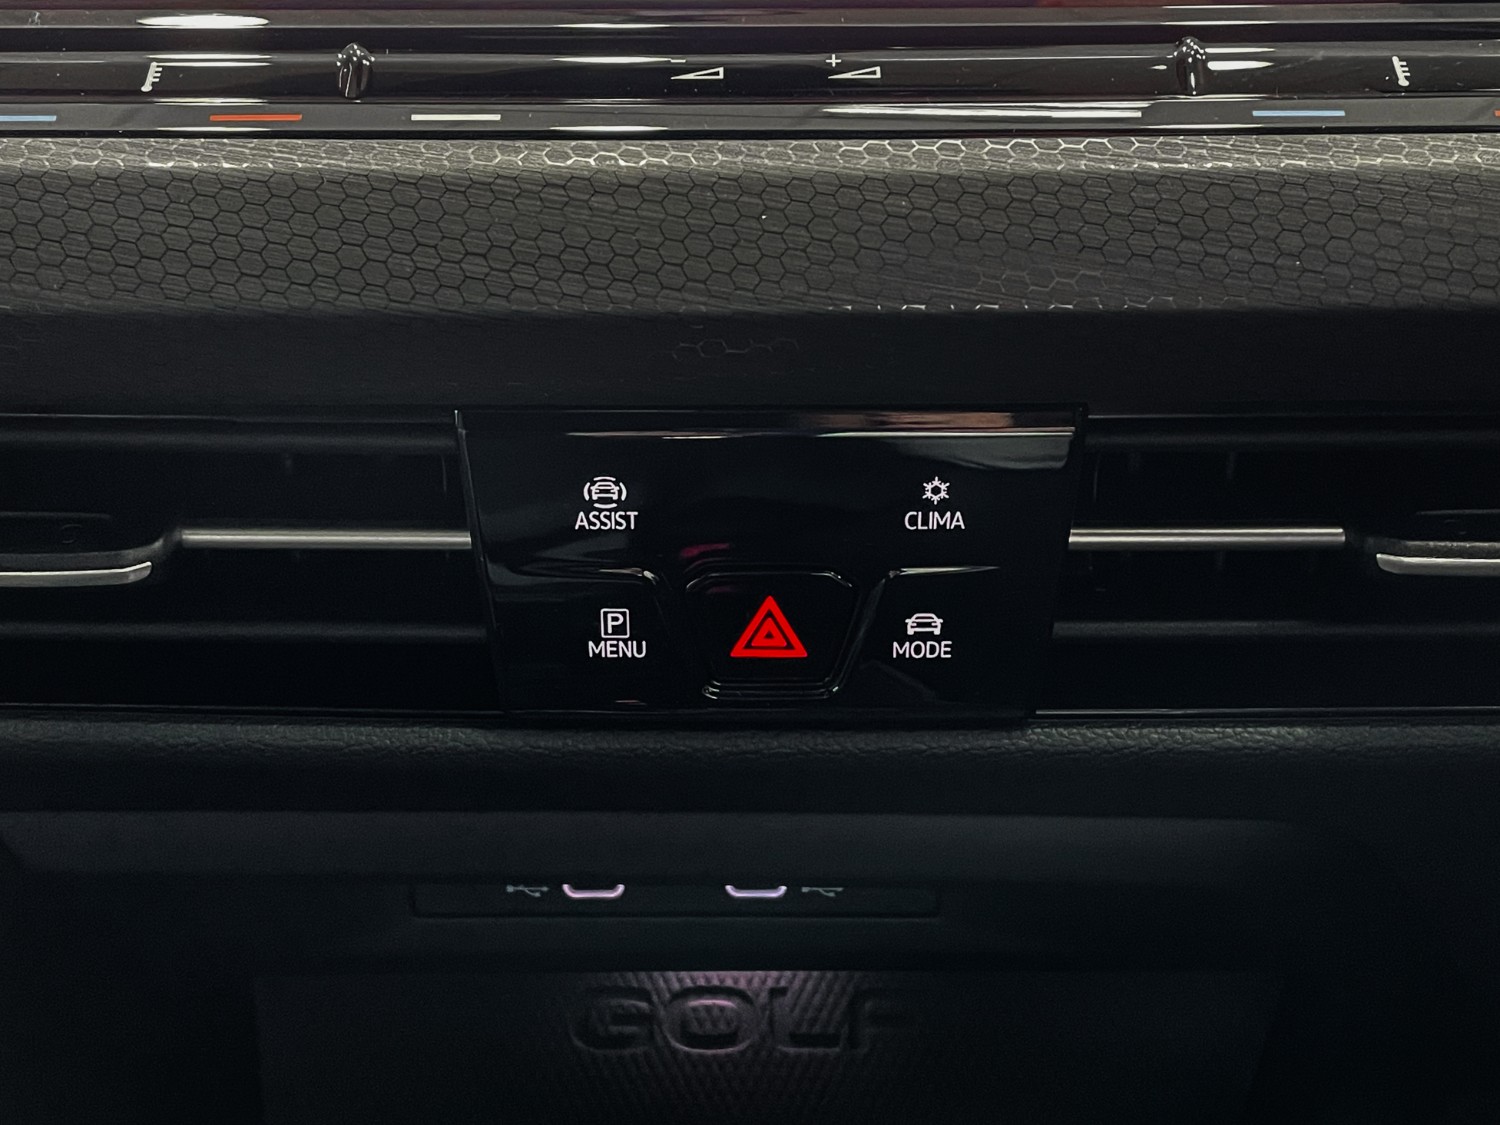 2021 Volkswagen Golf 8 GTI 7Spd DSG Hatch Image 20